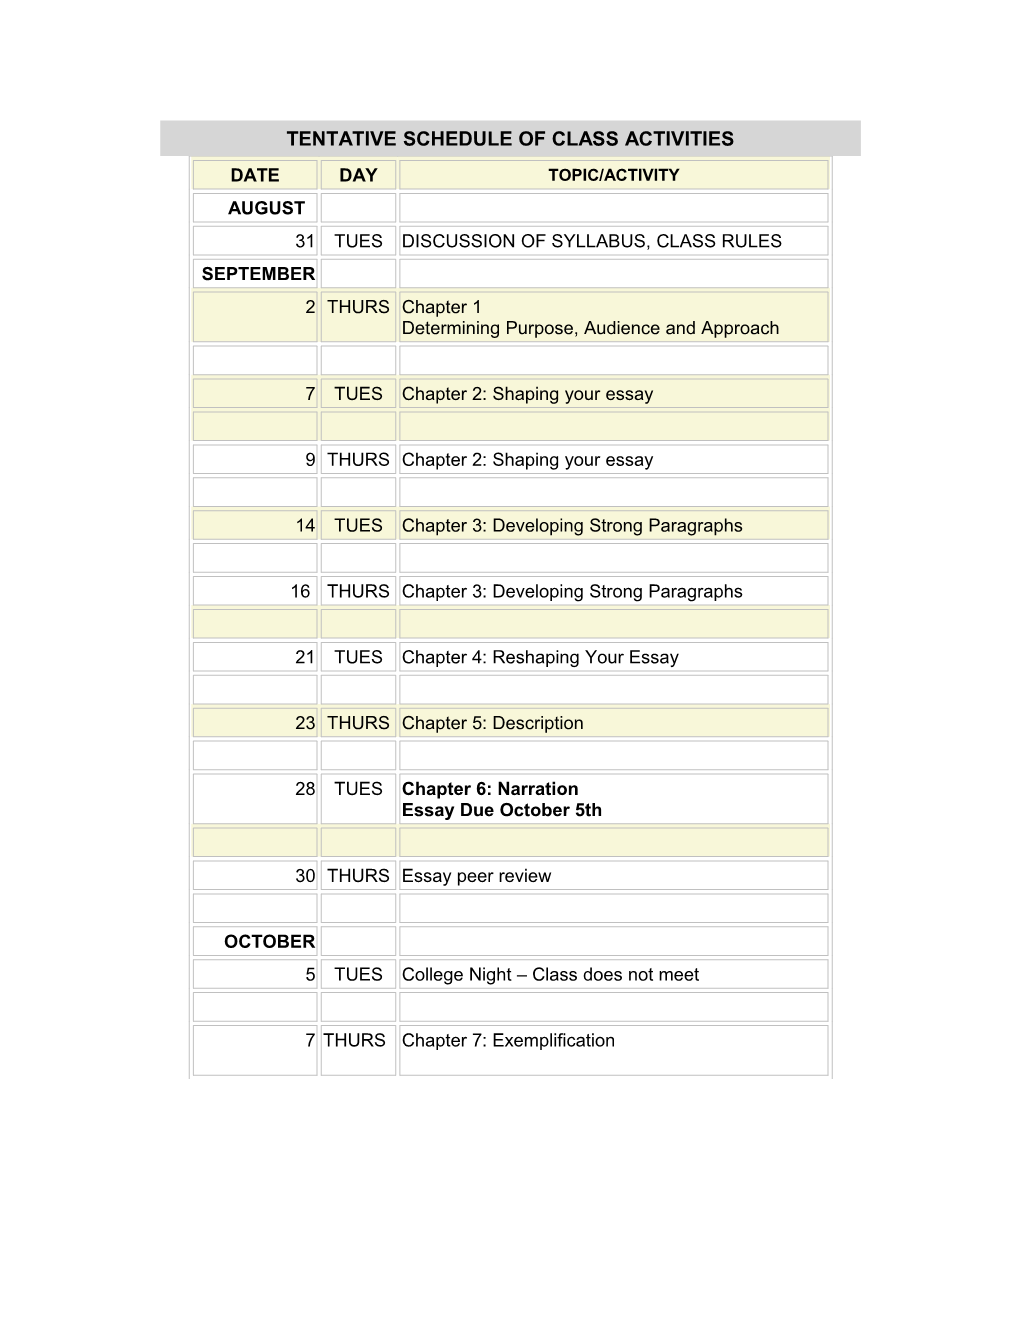 Tentative Schedule of Class Activities